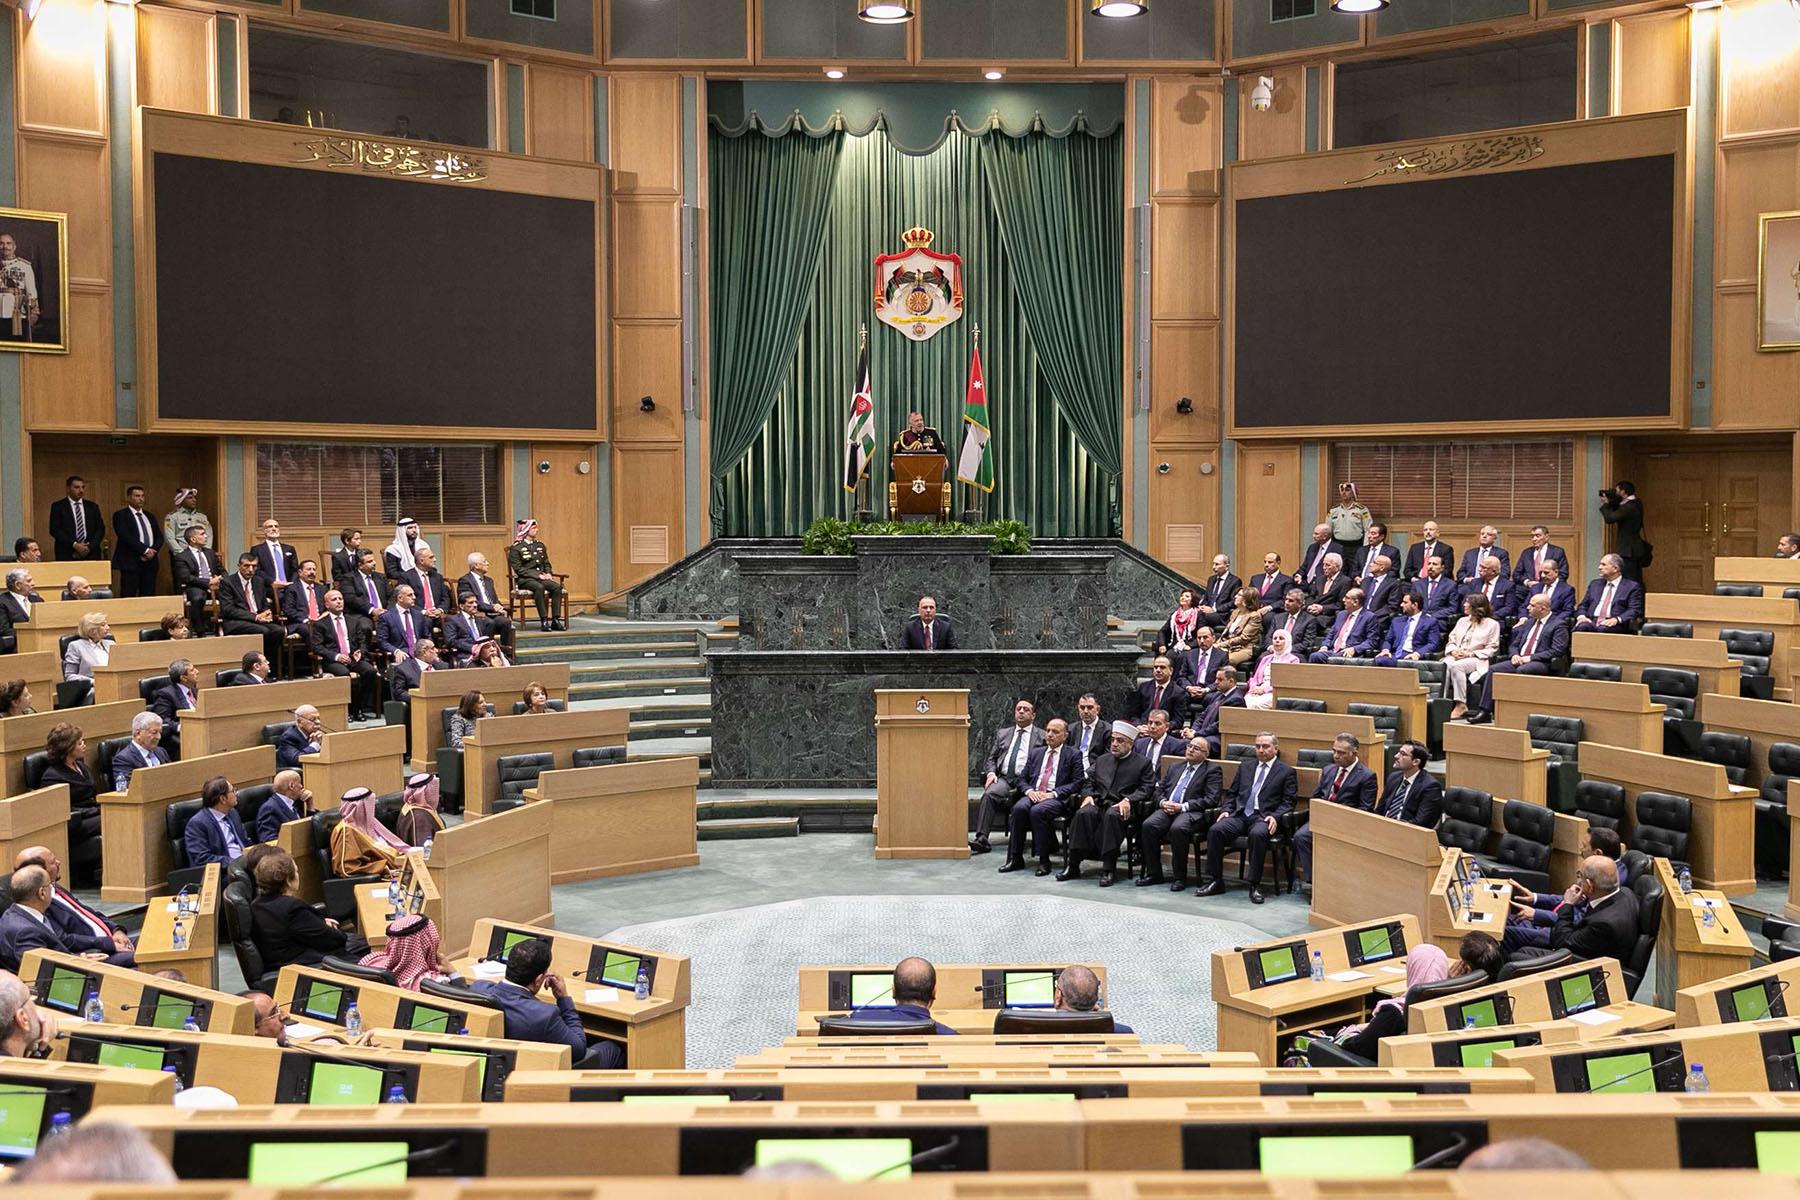 البرلمان الاردني